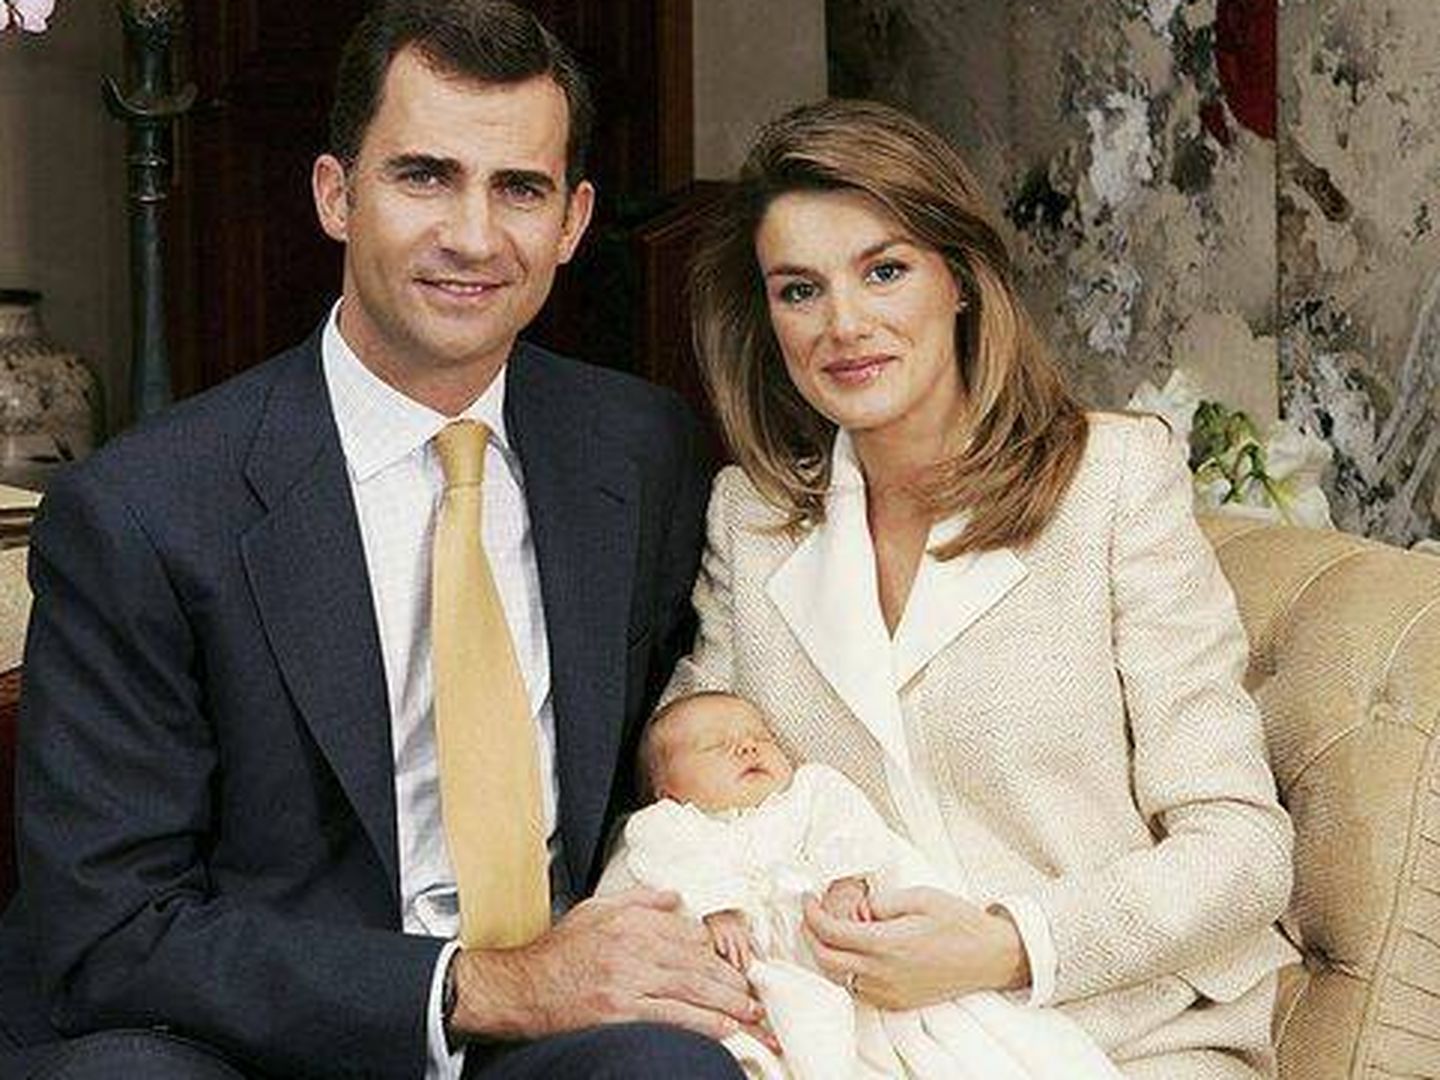  Los entonces Príncipes de Asturias con Leonor en diciembre de 2005. (Getty Images)